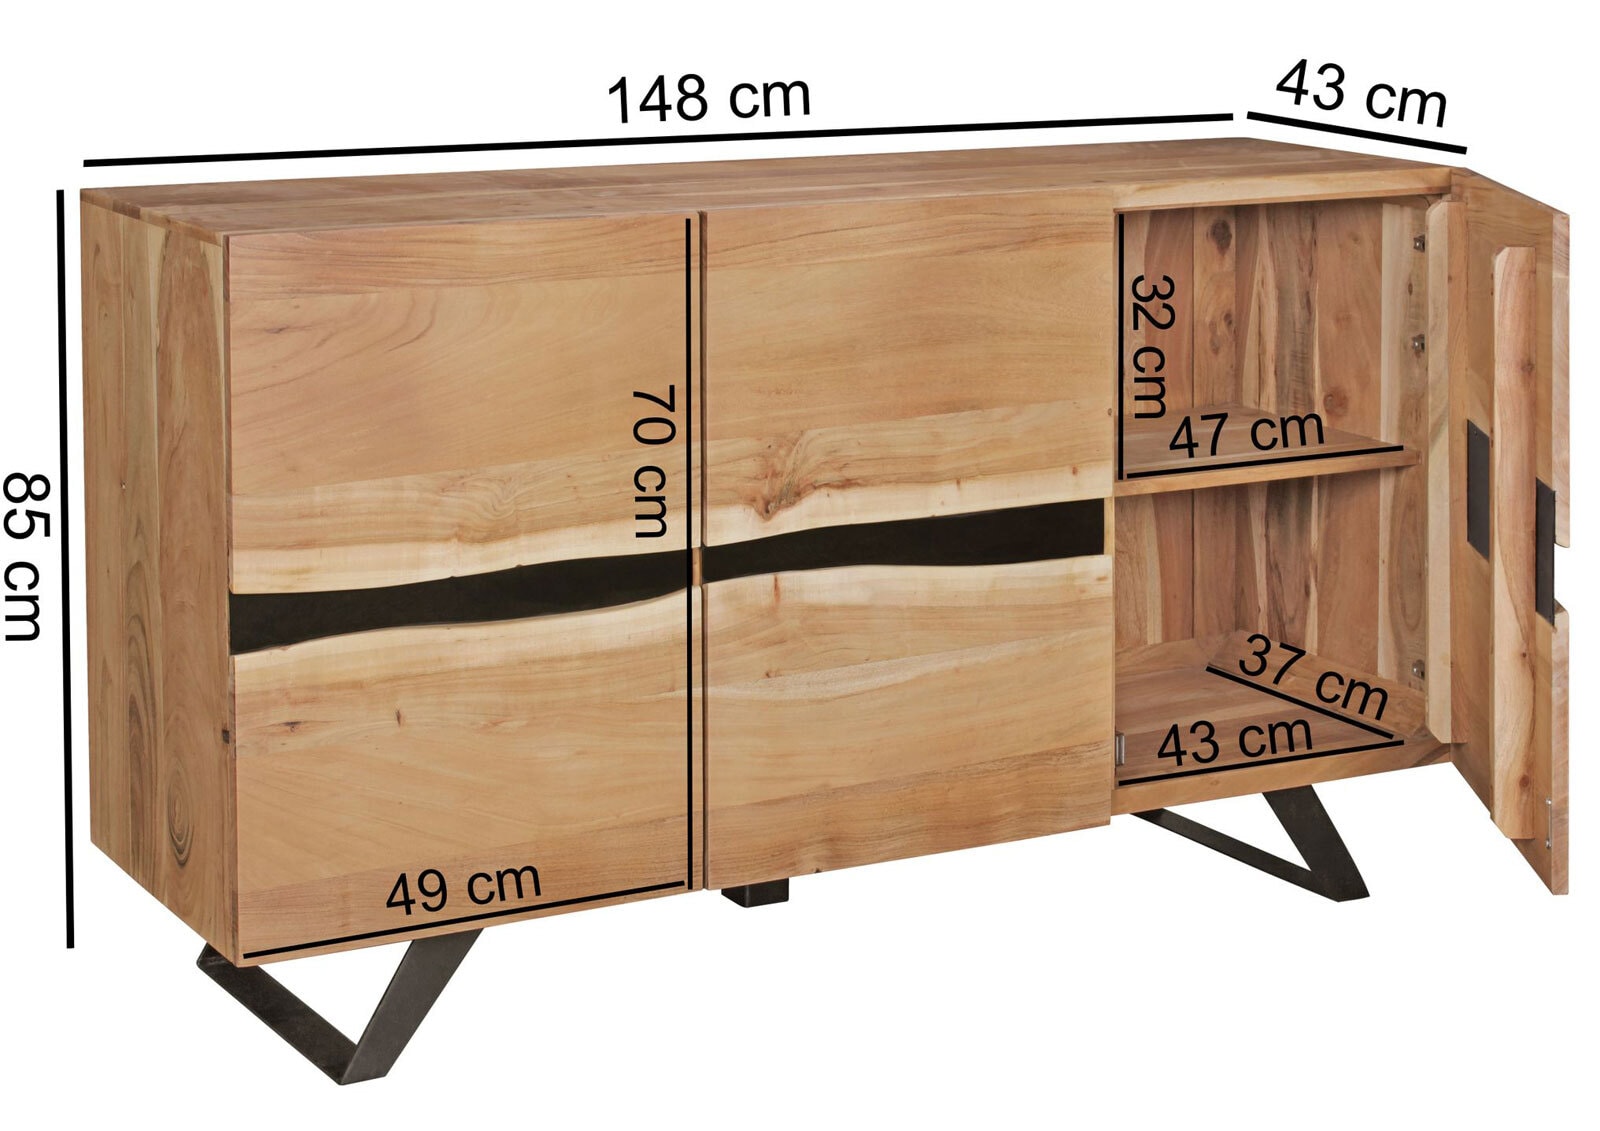 CASAVANTI Sideboard 148 x 85 cm braun